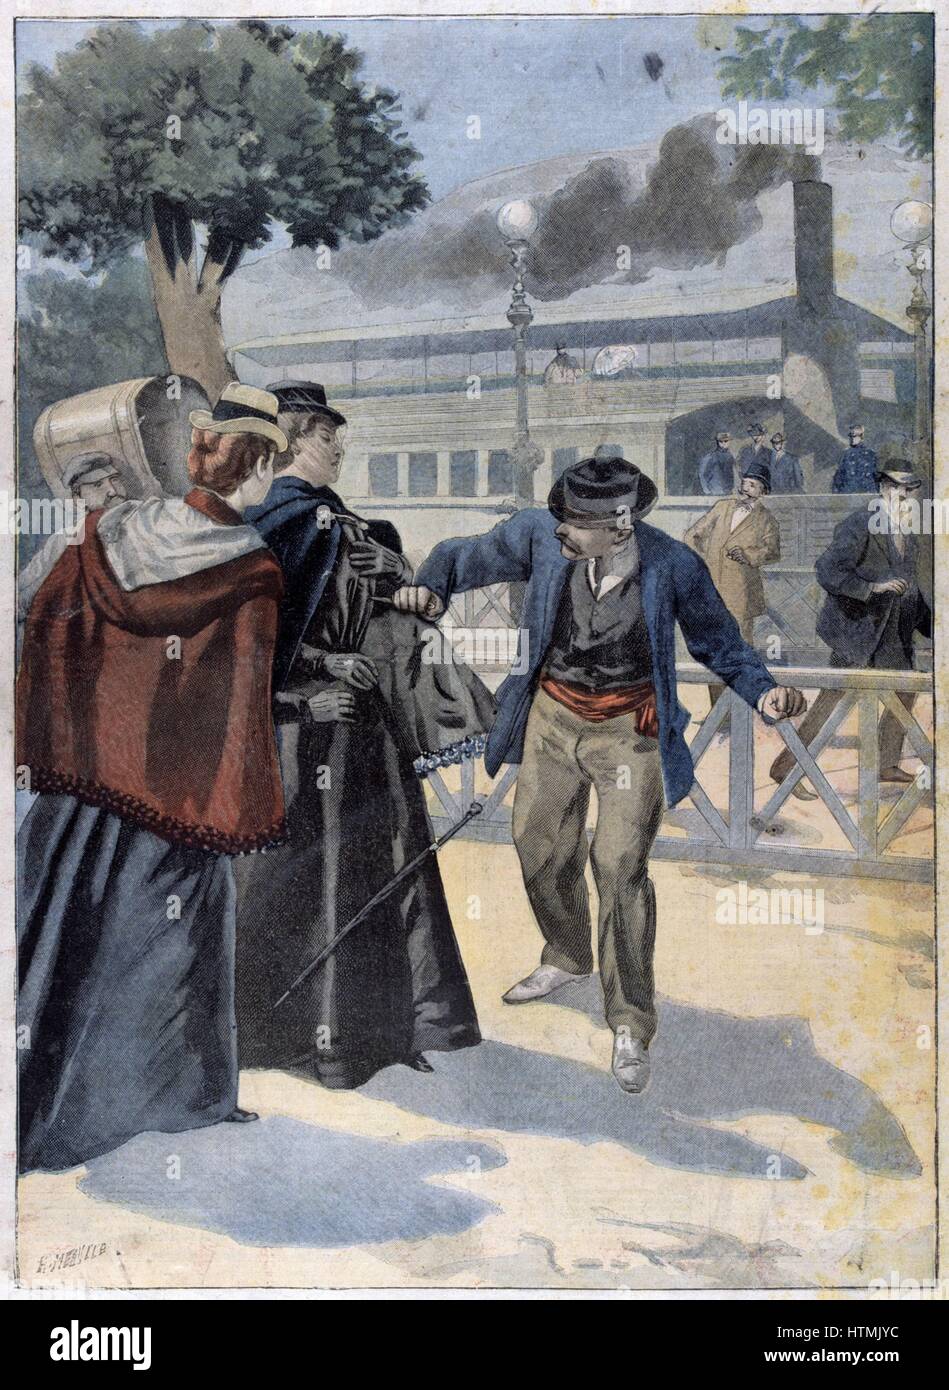 Isabel de Baviera (1827-1898), emperatriz de Austria, esposa del emperador Franz Joseph. Elizabeth apuñalado por un anarquista en Ginebra. Desde "Le Petit Journal", París, 25 de septiembre de 1898 Foto de stock